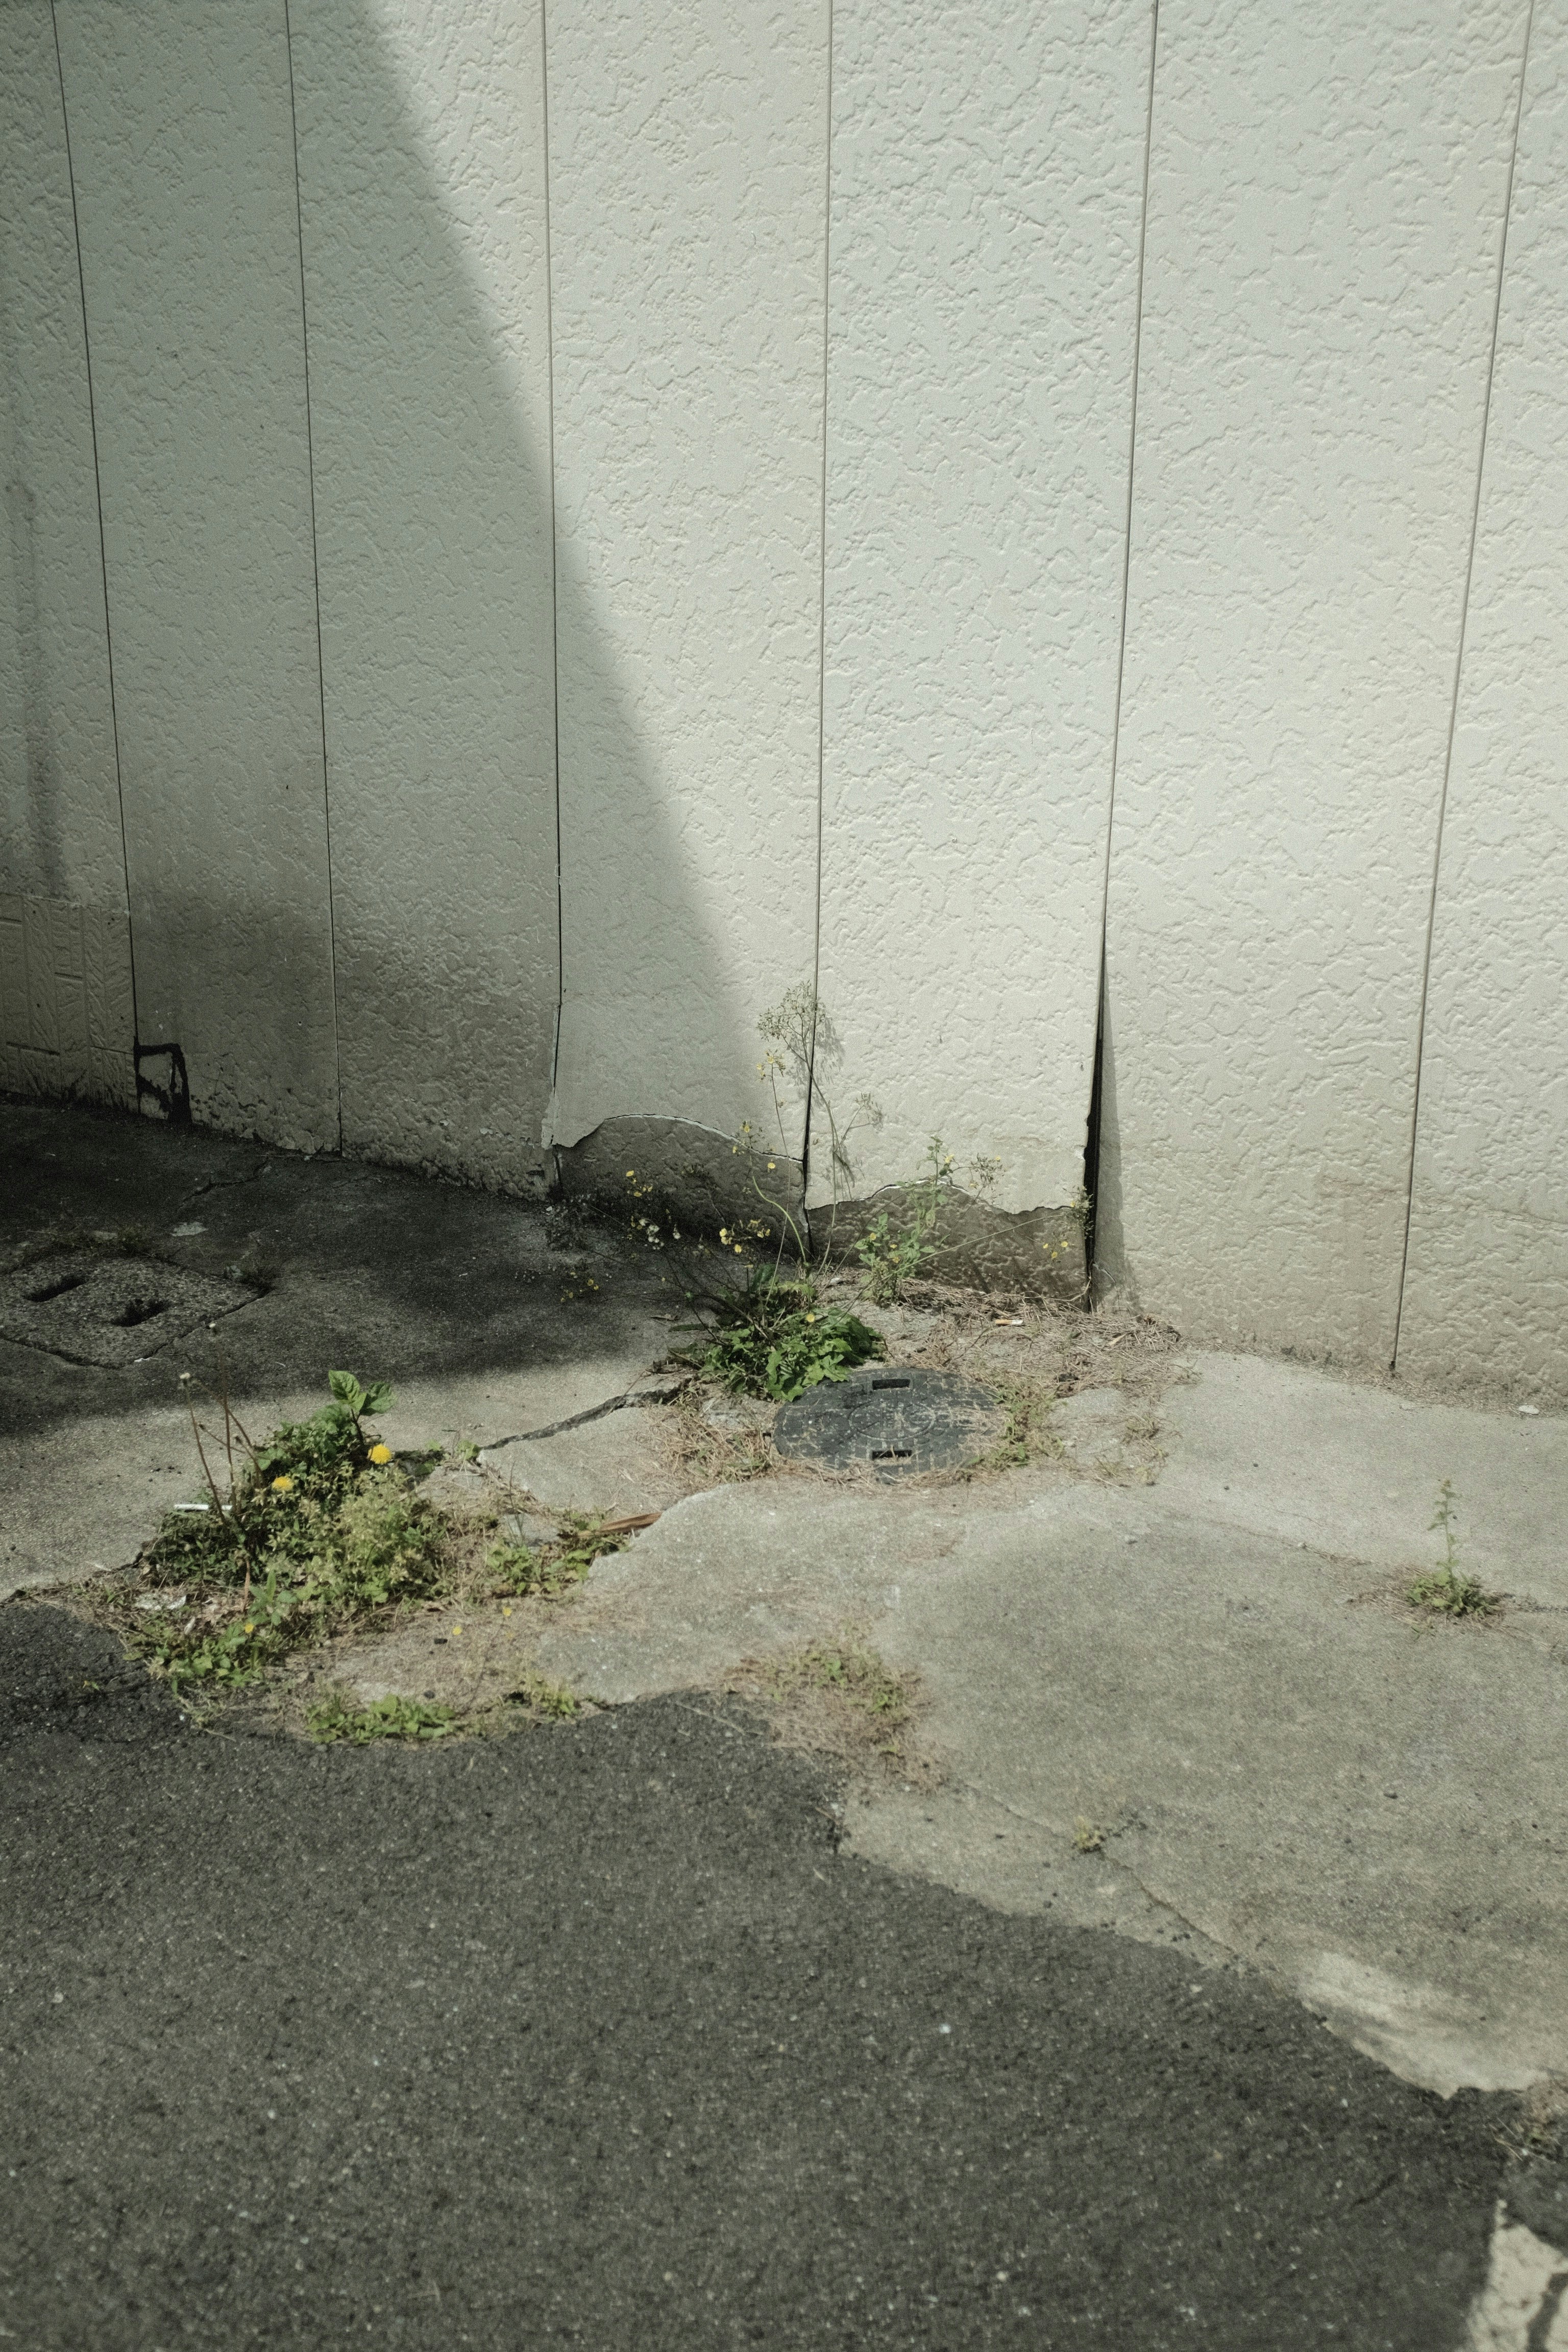 green plant on gray concrete floor